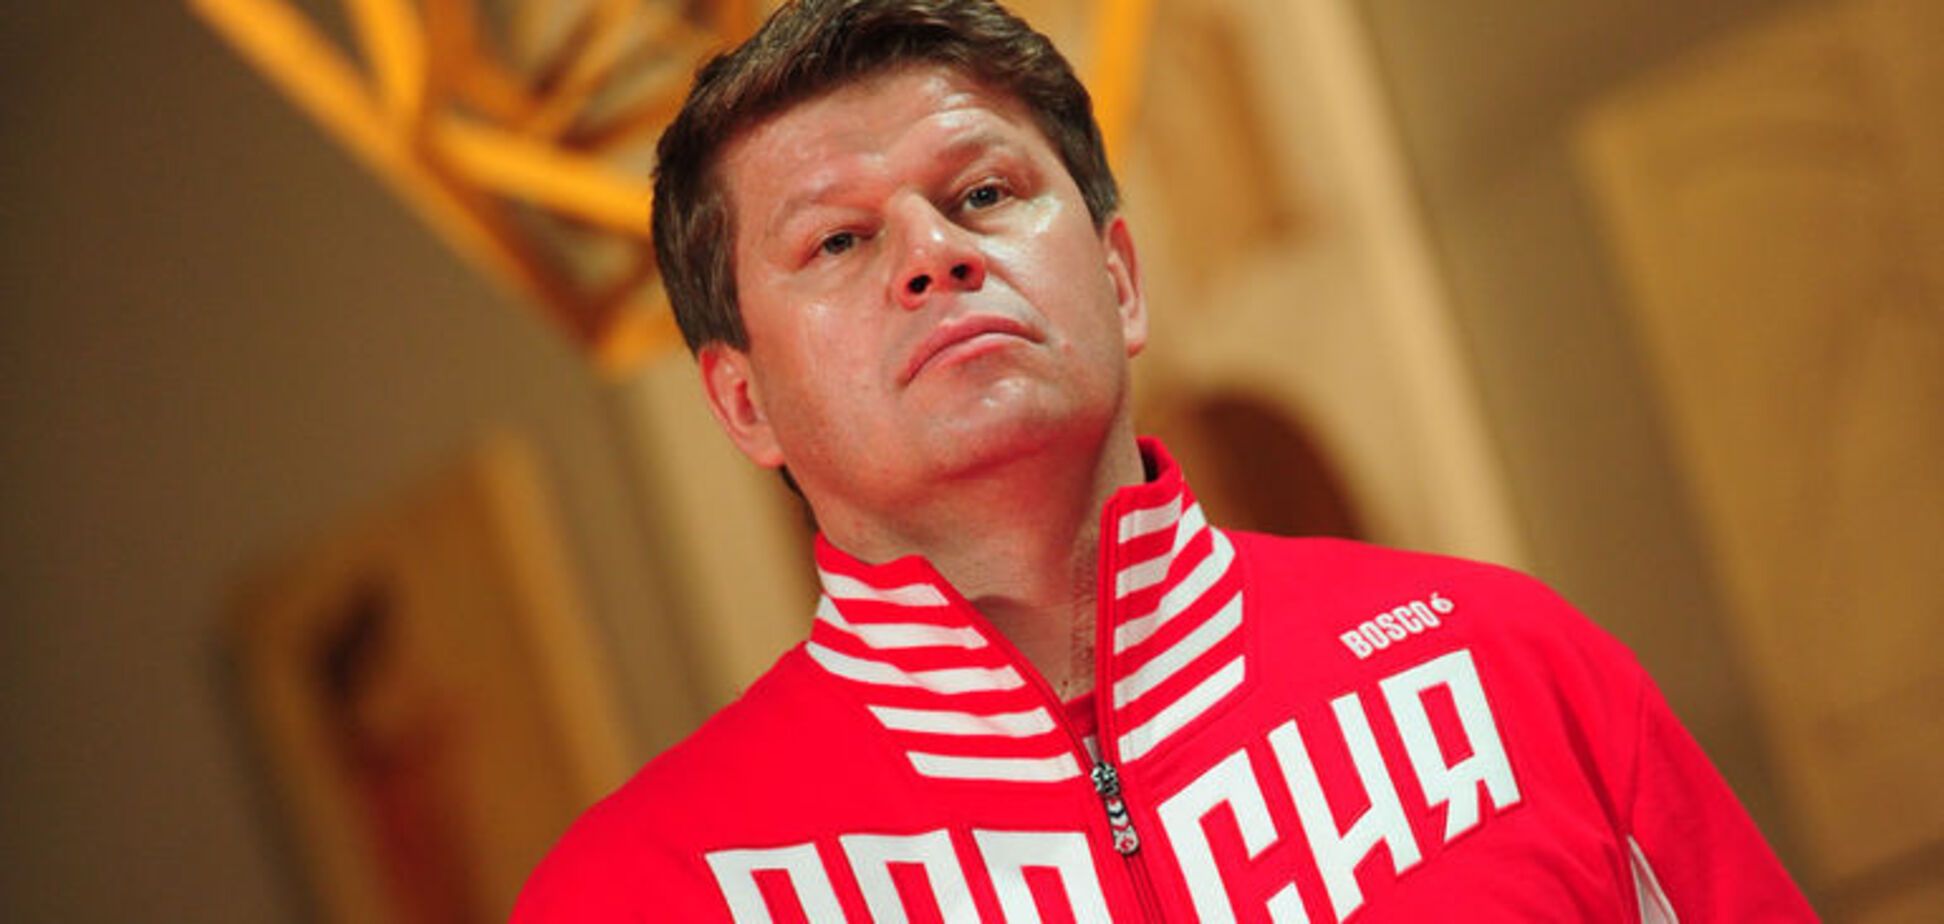 'Вопят и воняют': российский комментатор унизительно высказался о бойкоте Украиной Кубка мира по биатлону в РФ